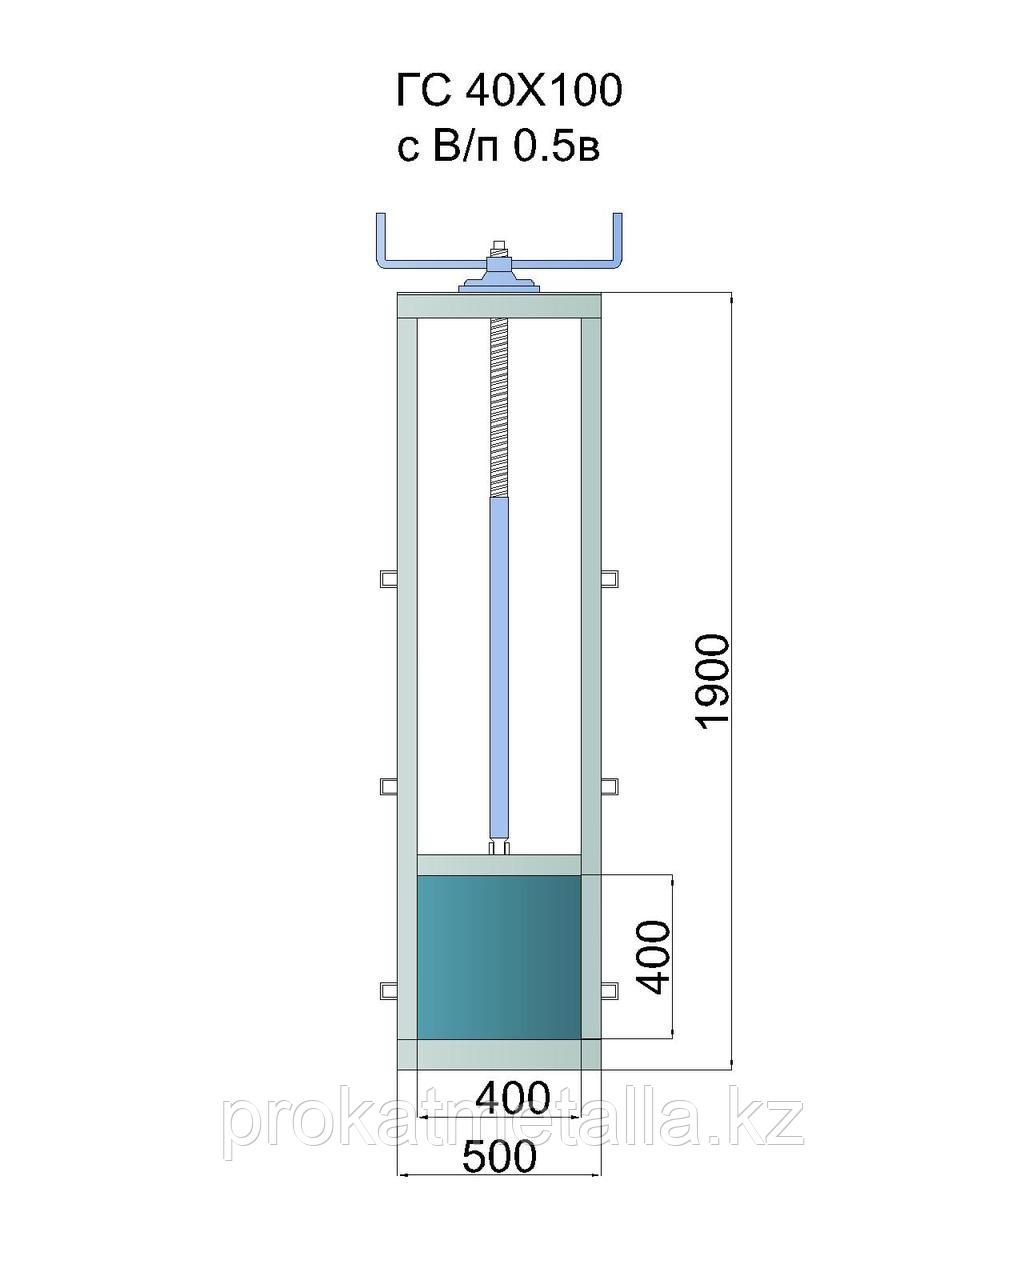 Гидрозатвор глубинный ГС 40х100, с винтоподъёмником 0.5в